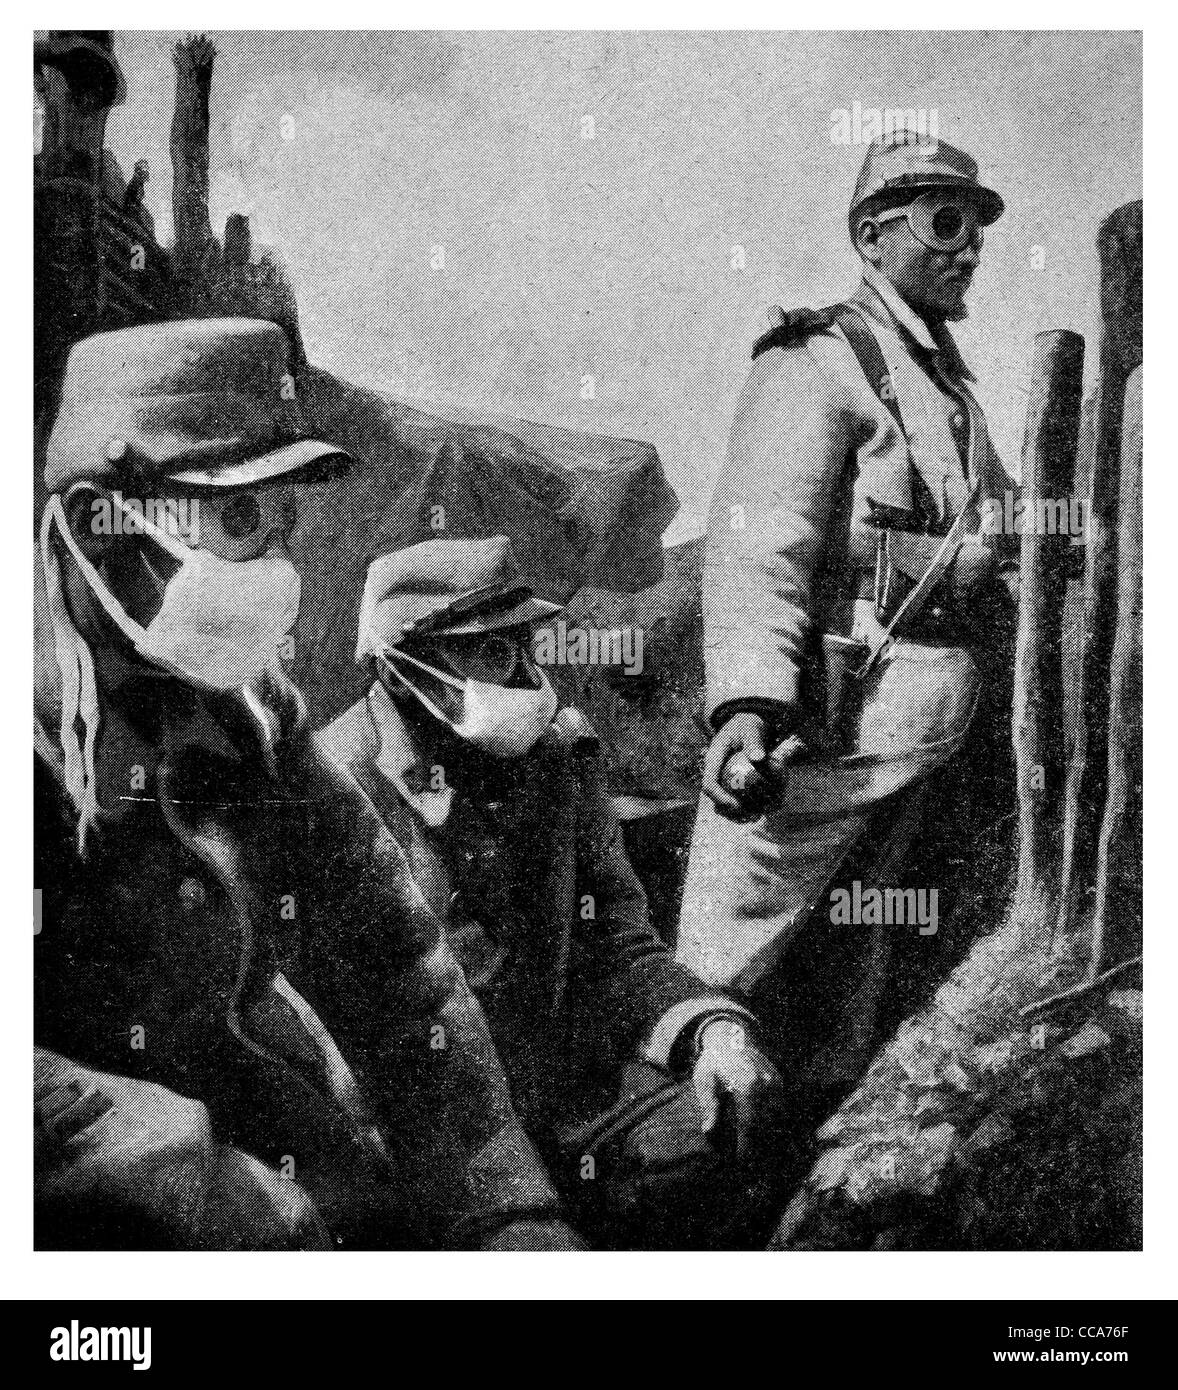 1916 Reno una guerra di trincea francese indossando maschere MASCHERAI gas asfissianti attacco tedesco gettare granate bomba respiratore gli occhiali di protezione Foto Stock